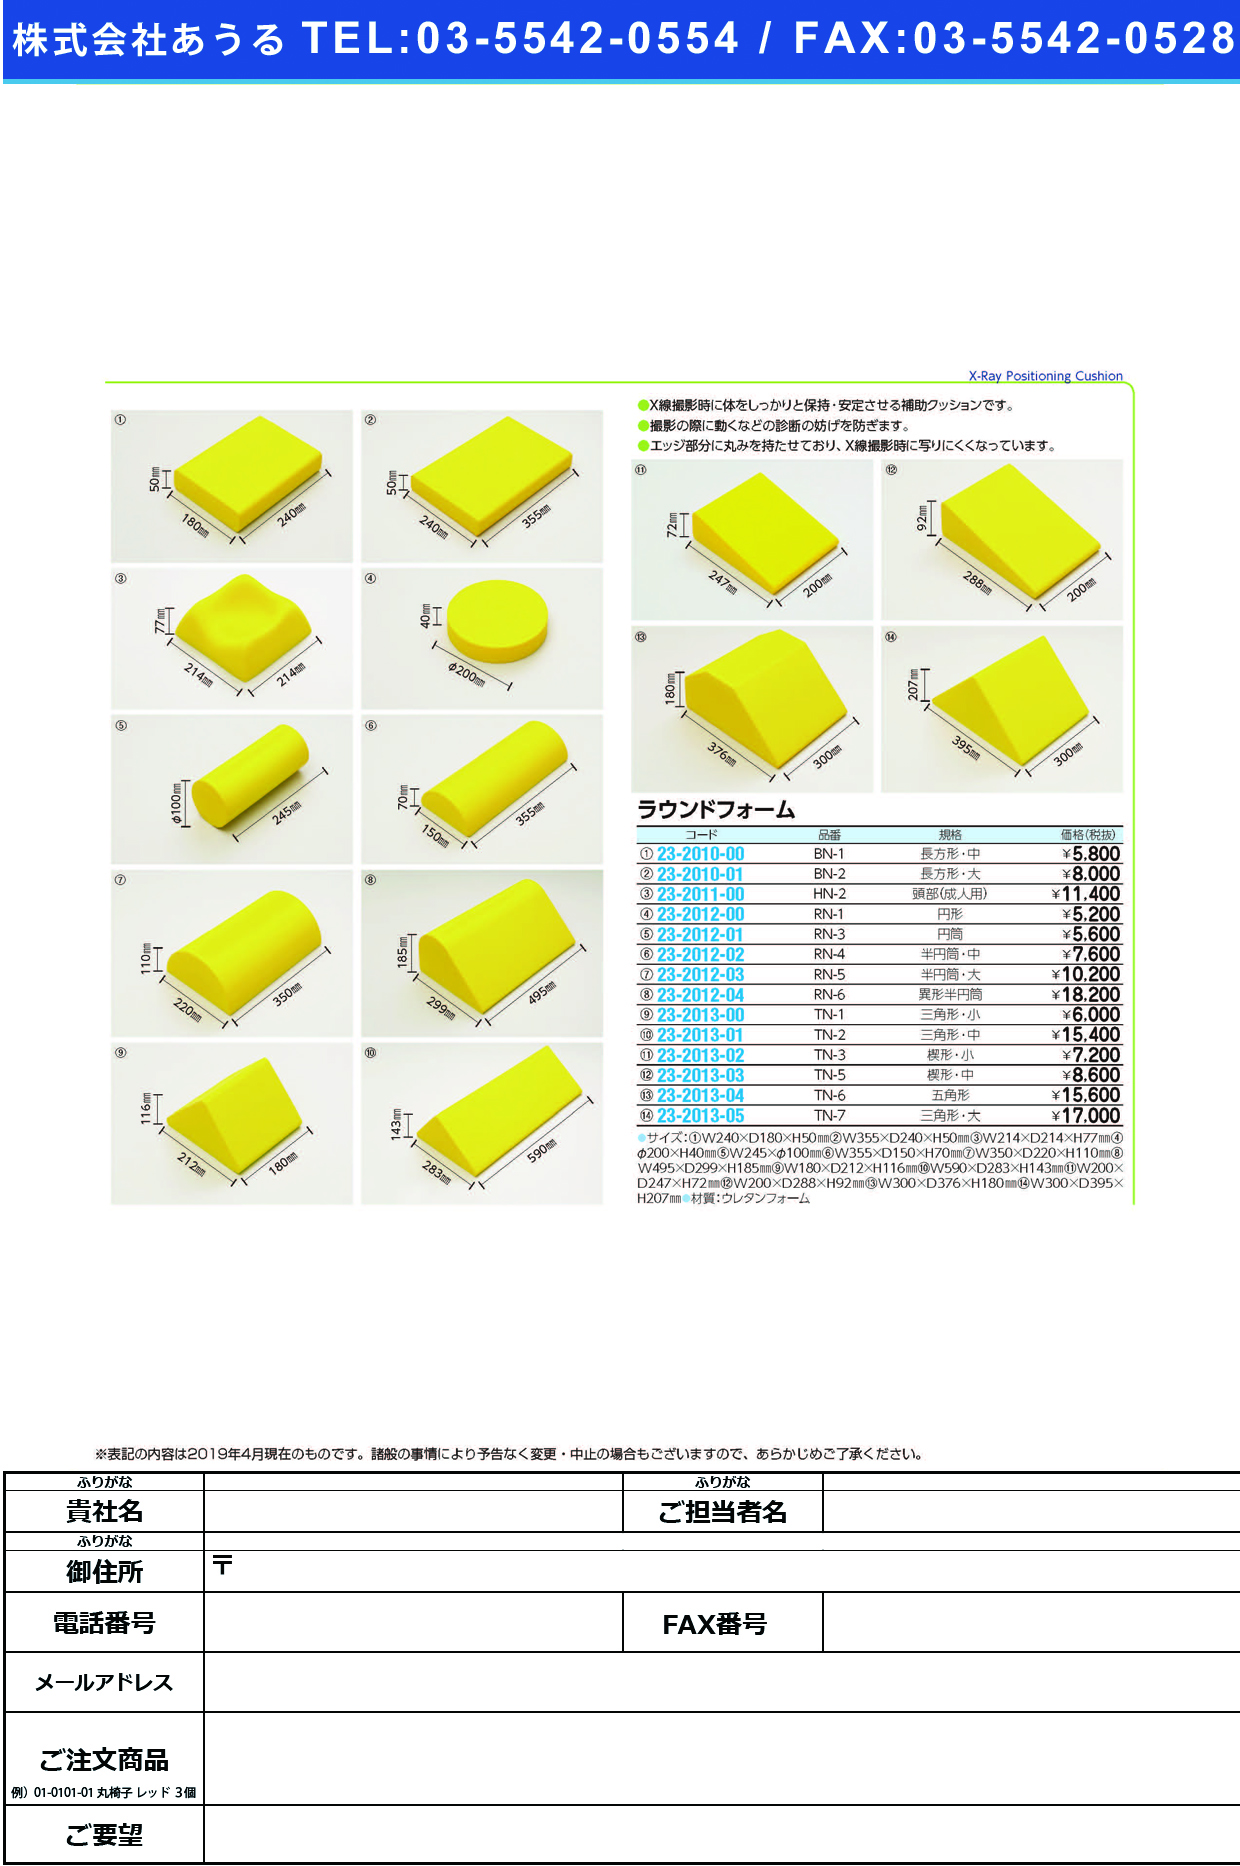 (23-2010-01)ラウンドフォーム（長方形ブロック・大 BN-2 ﾗｳﾝﾄﾞﾌｫｰﾑ(ﾁｮｳﾎｳｹｲﾀﾞｲ【1個単位】【2019年カタログ商品】